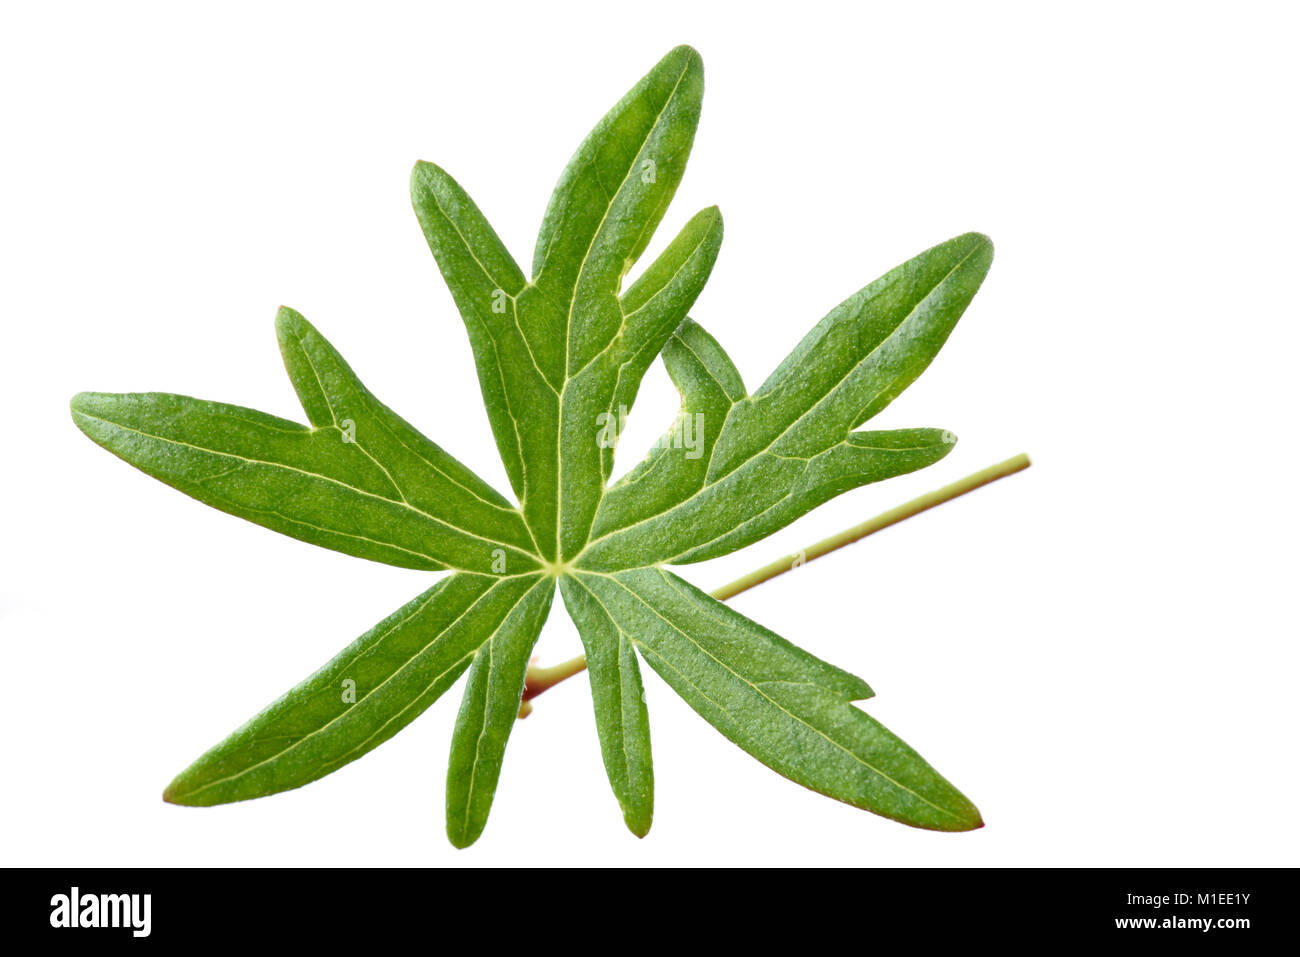 Geranium leaf Stock Photo